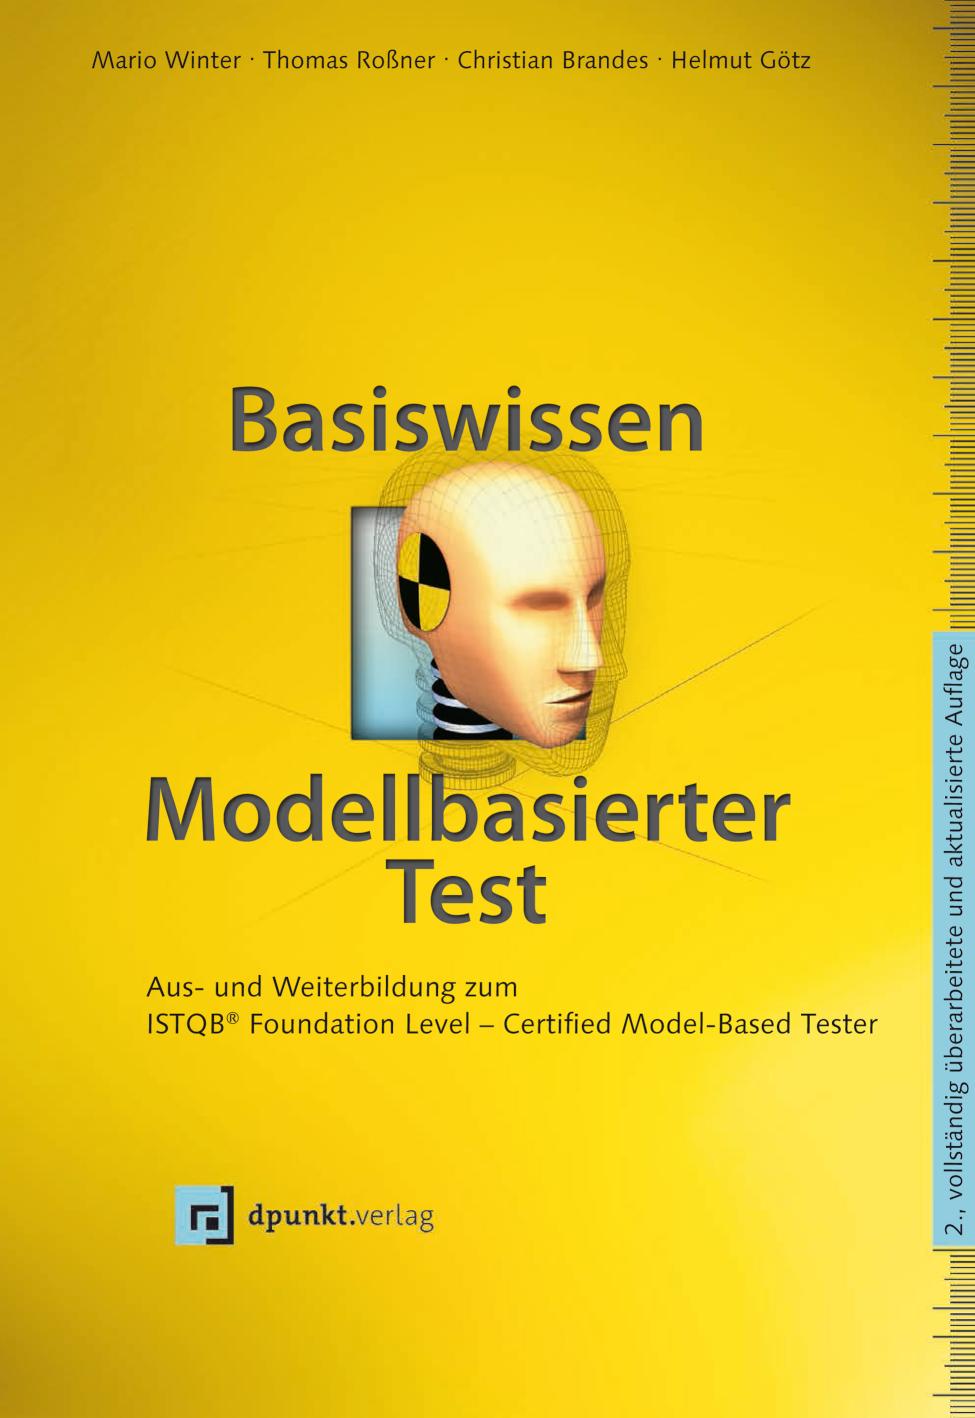 Basiswissen modellbasierter Test Aus- und Weiterbildung zum ISTQB® Foundation Level - Certified Model-Based Tester